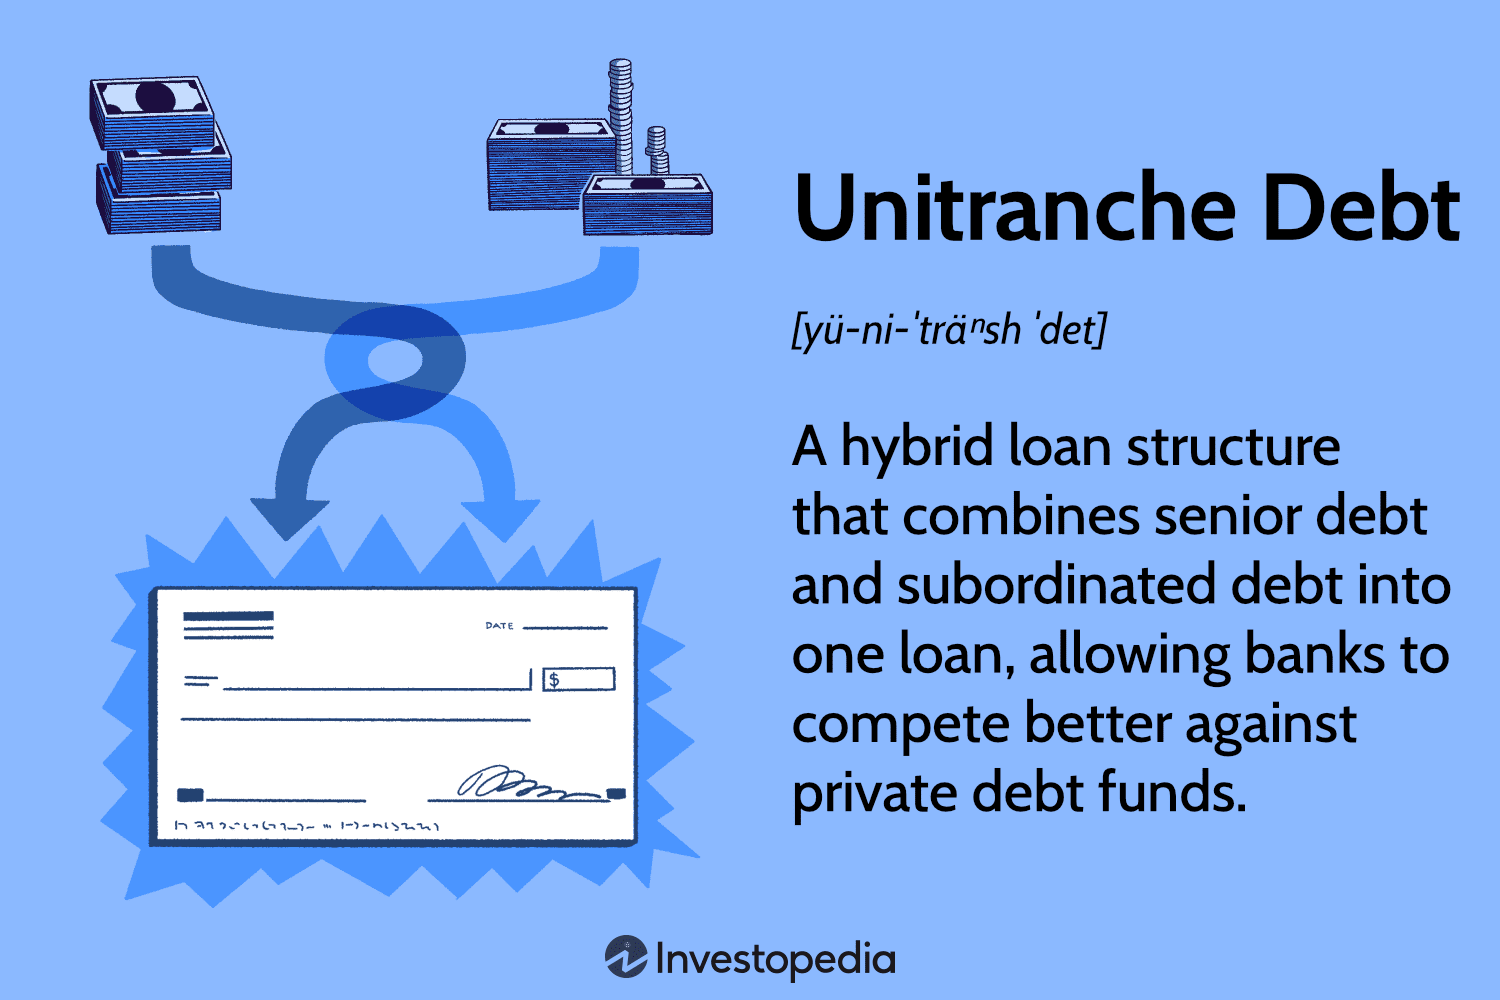 Unitranche Debt